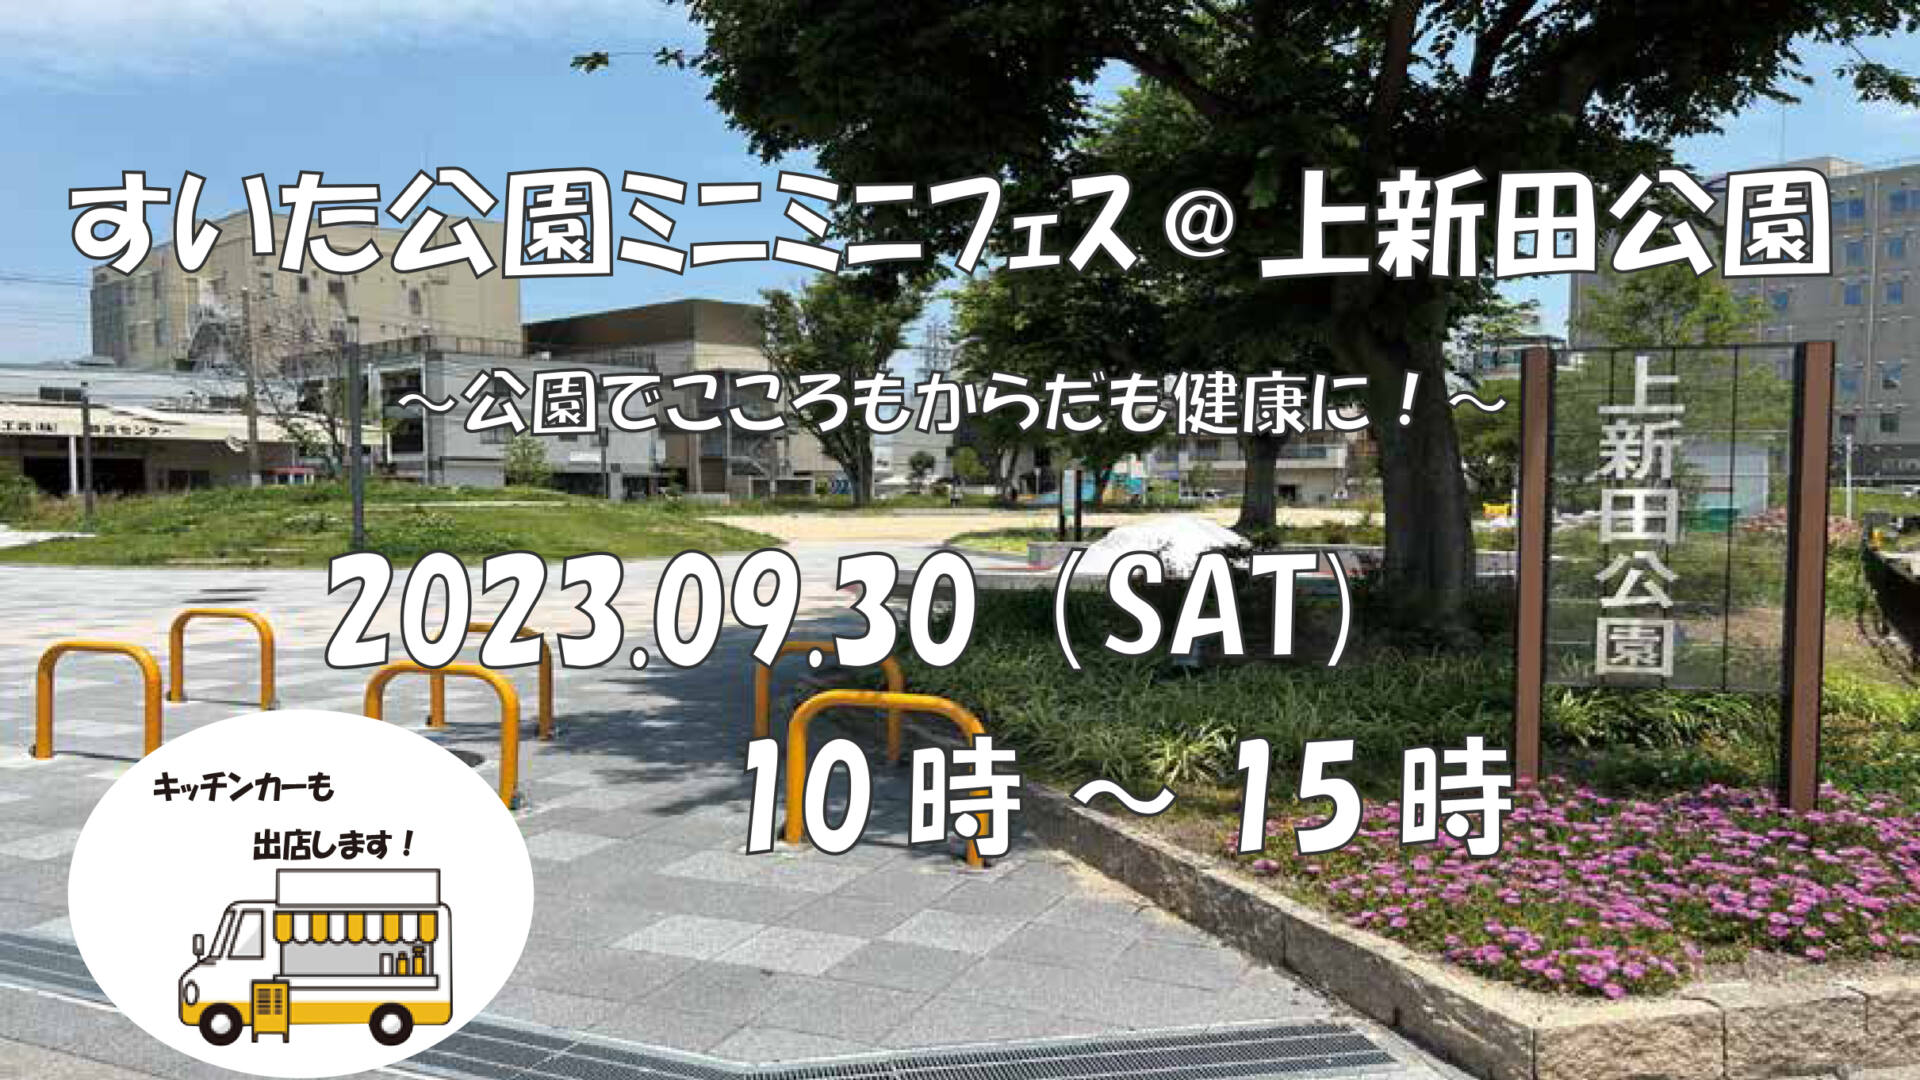 すいた公園ミニミニフェス＠上新田公園が開催されます！